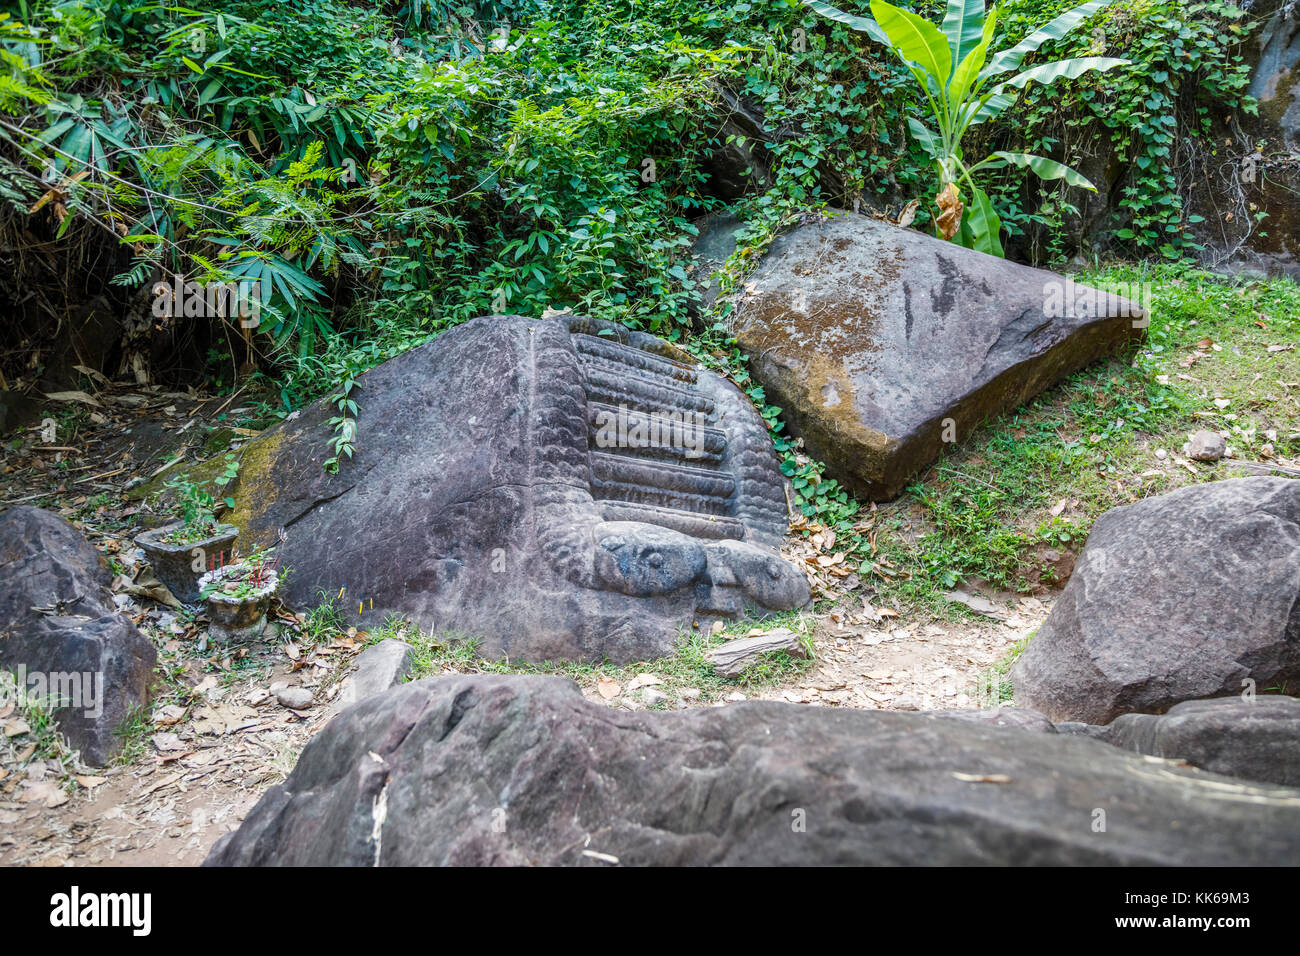 Peut-être utilisé pour des mesures sculpté des sacrifices humains dans les ruines de la pré-angkorienne temple hindou Khmer de Vat Phou, Champassak, Laos, Asie du sud-est Banque D'Images